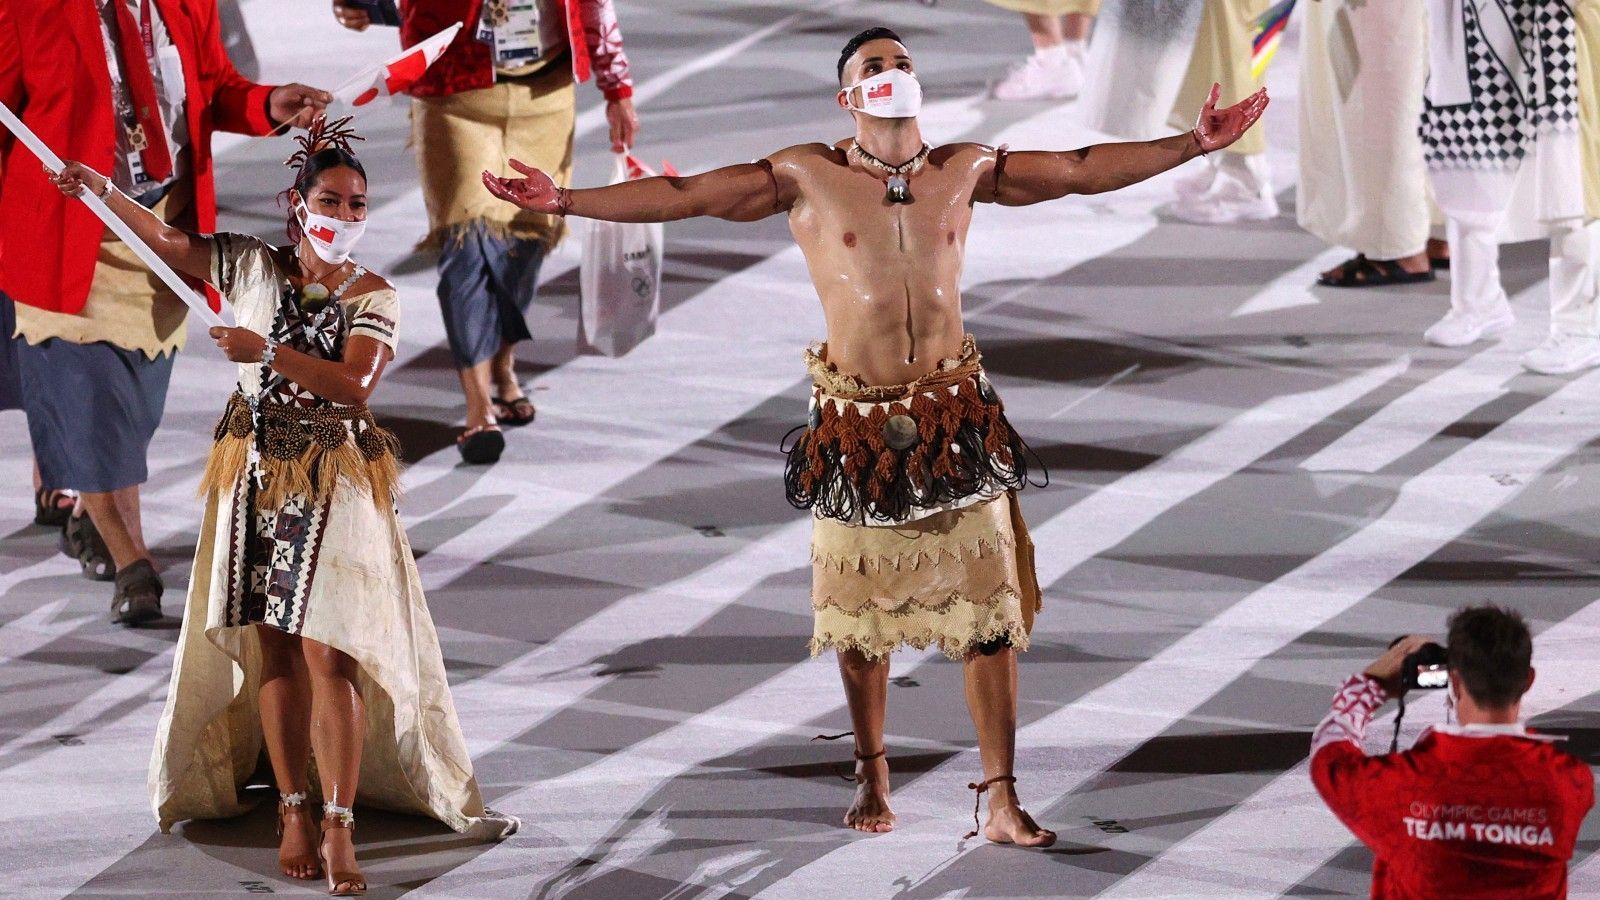 Tonga Mann Taufatofua Beeindruckt Bei Olympia Mit Eingeöltem Body